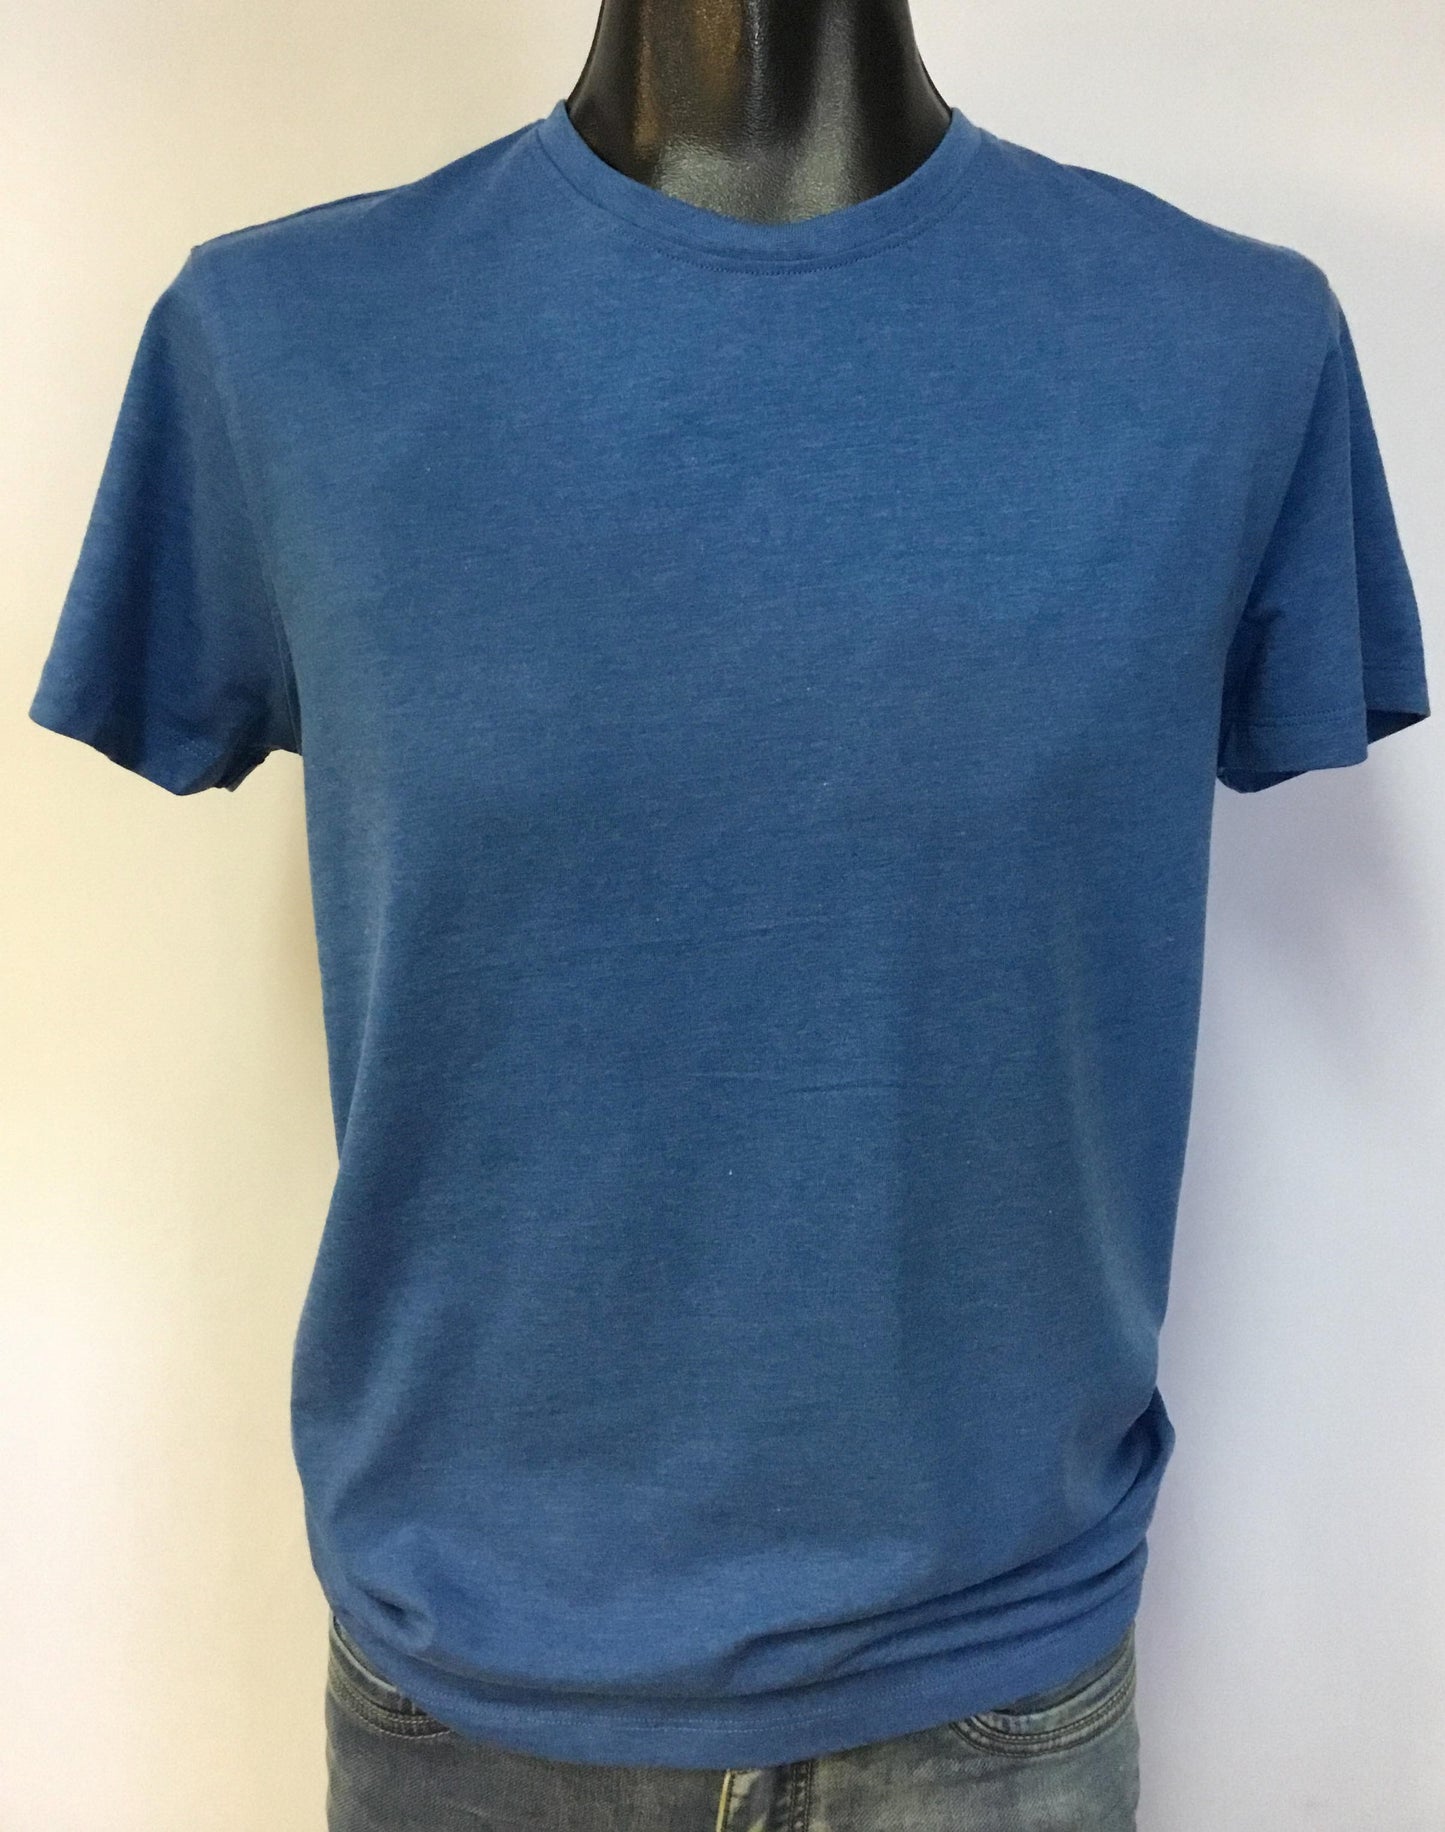 T-shirt bleu - Point Zéro